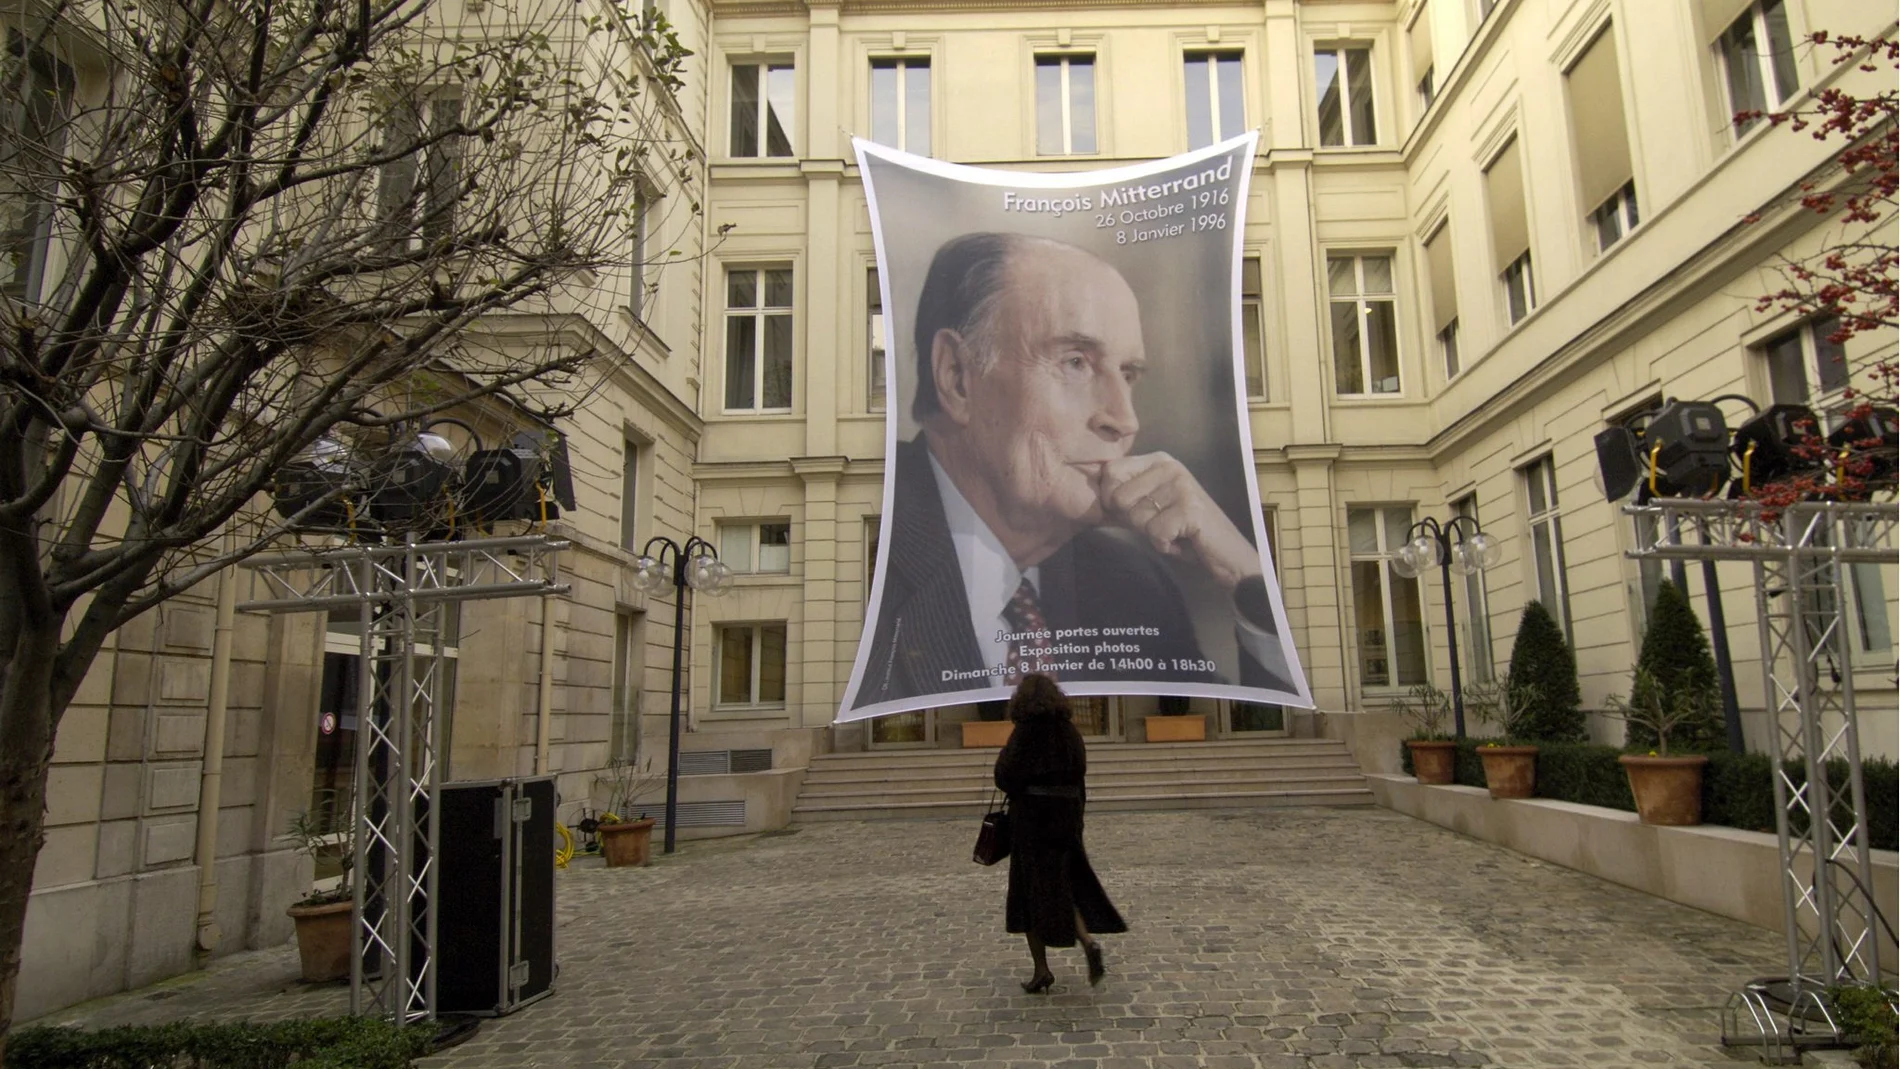 Una imagen de Mitterrand presidiendo la sede del partido socialista francés en el aniversario de la muerte del político